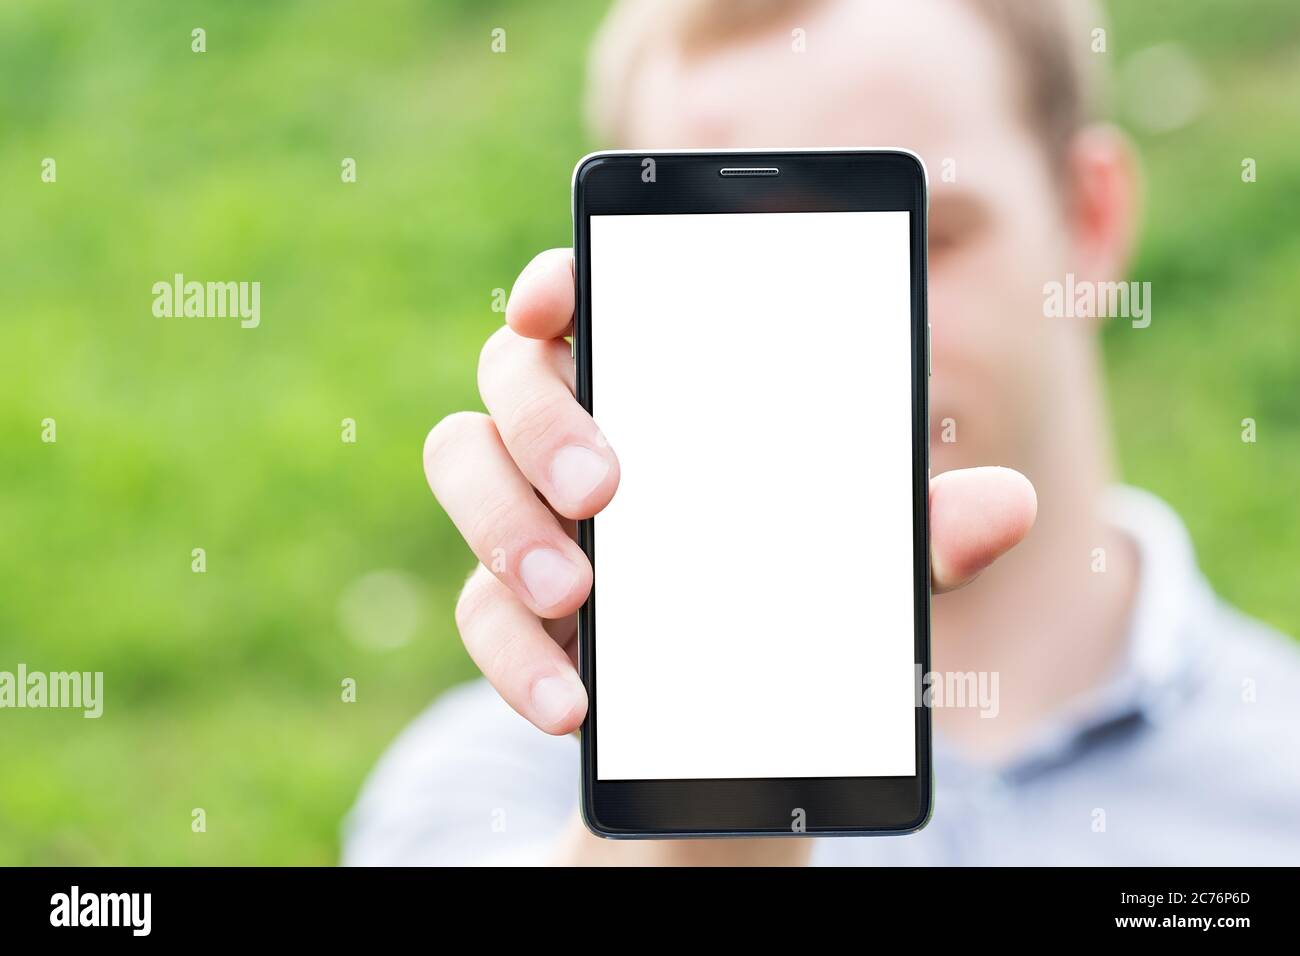 Jeune homme montrant une application de téléphone mobile, gros plan Banque D'Images